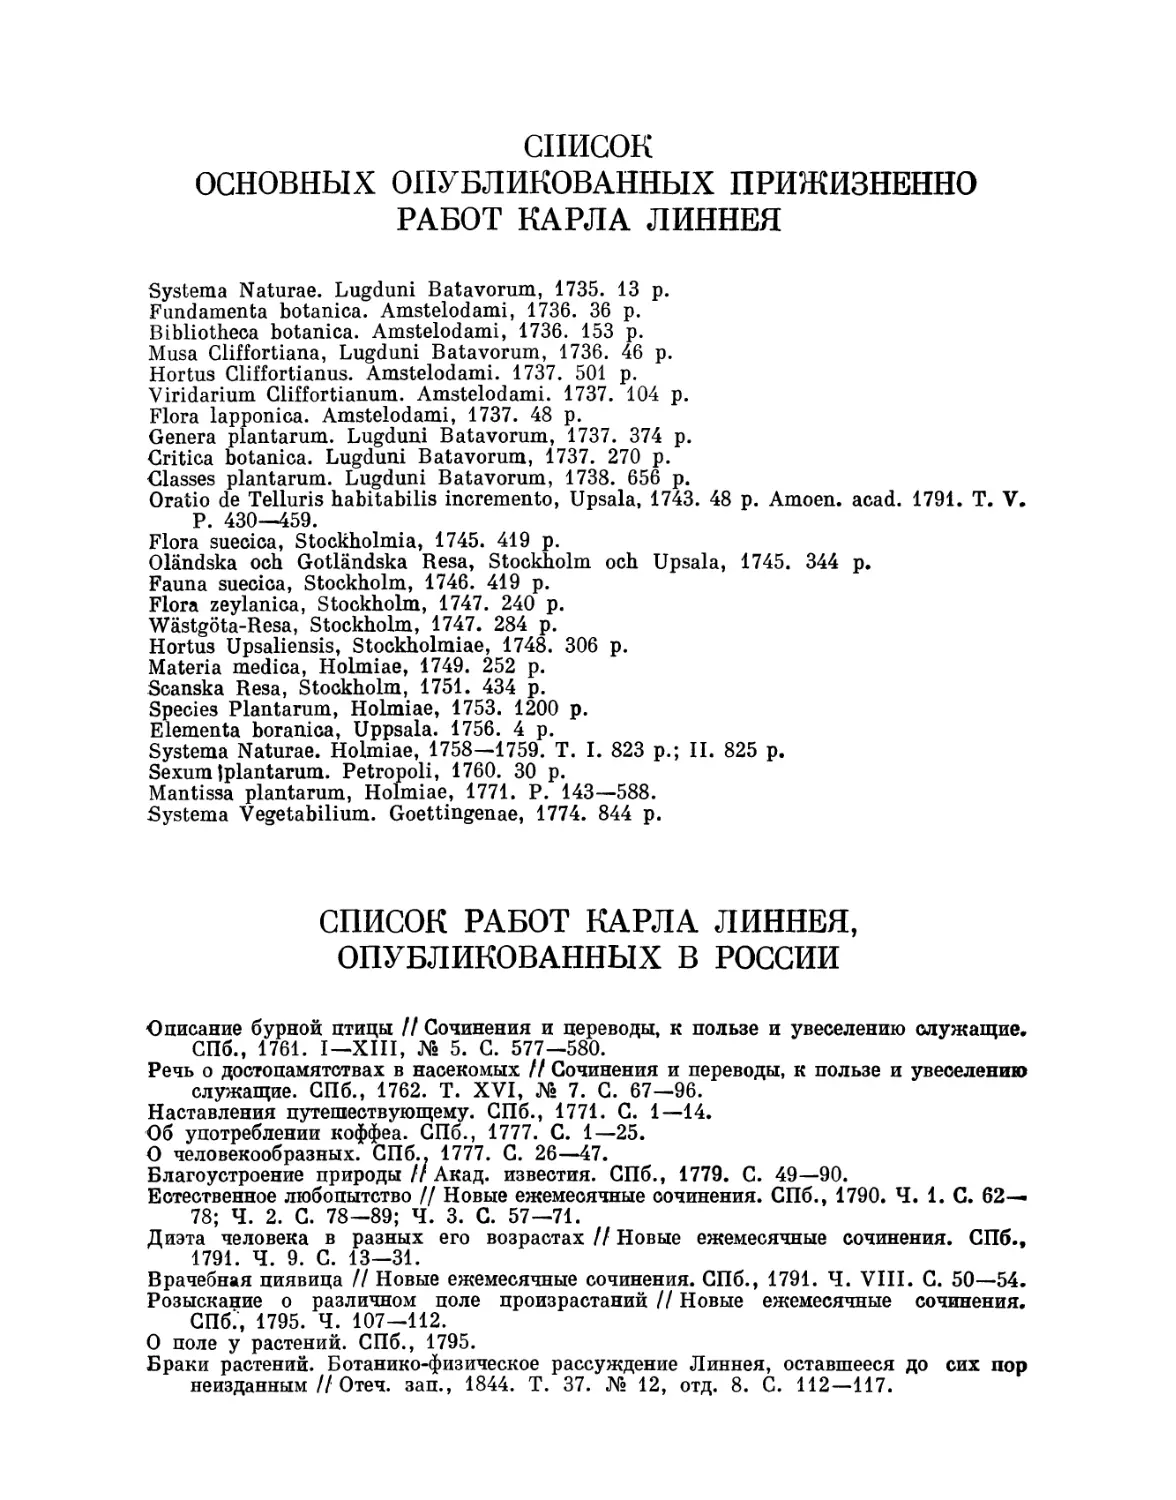 Список основных опубликованных прижизненно работ Карла Линнея
Список работ Карла Линнея, опубликованных в России